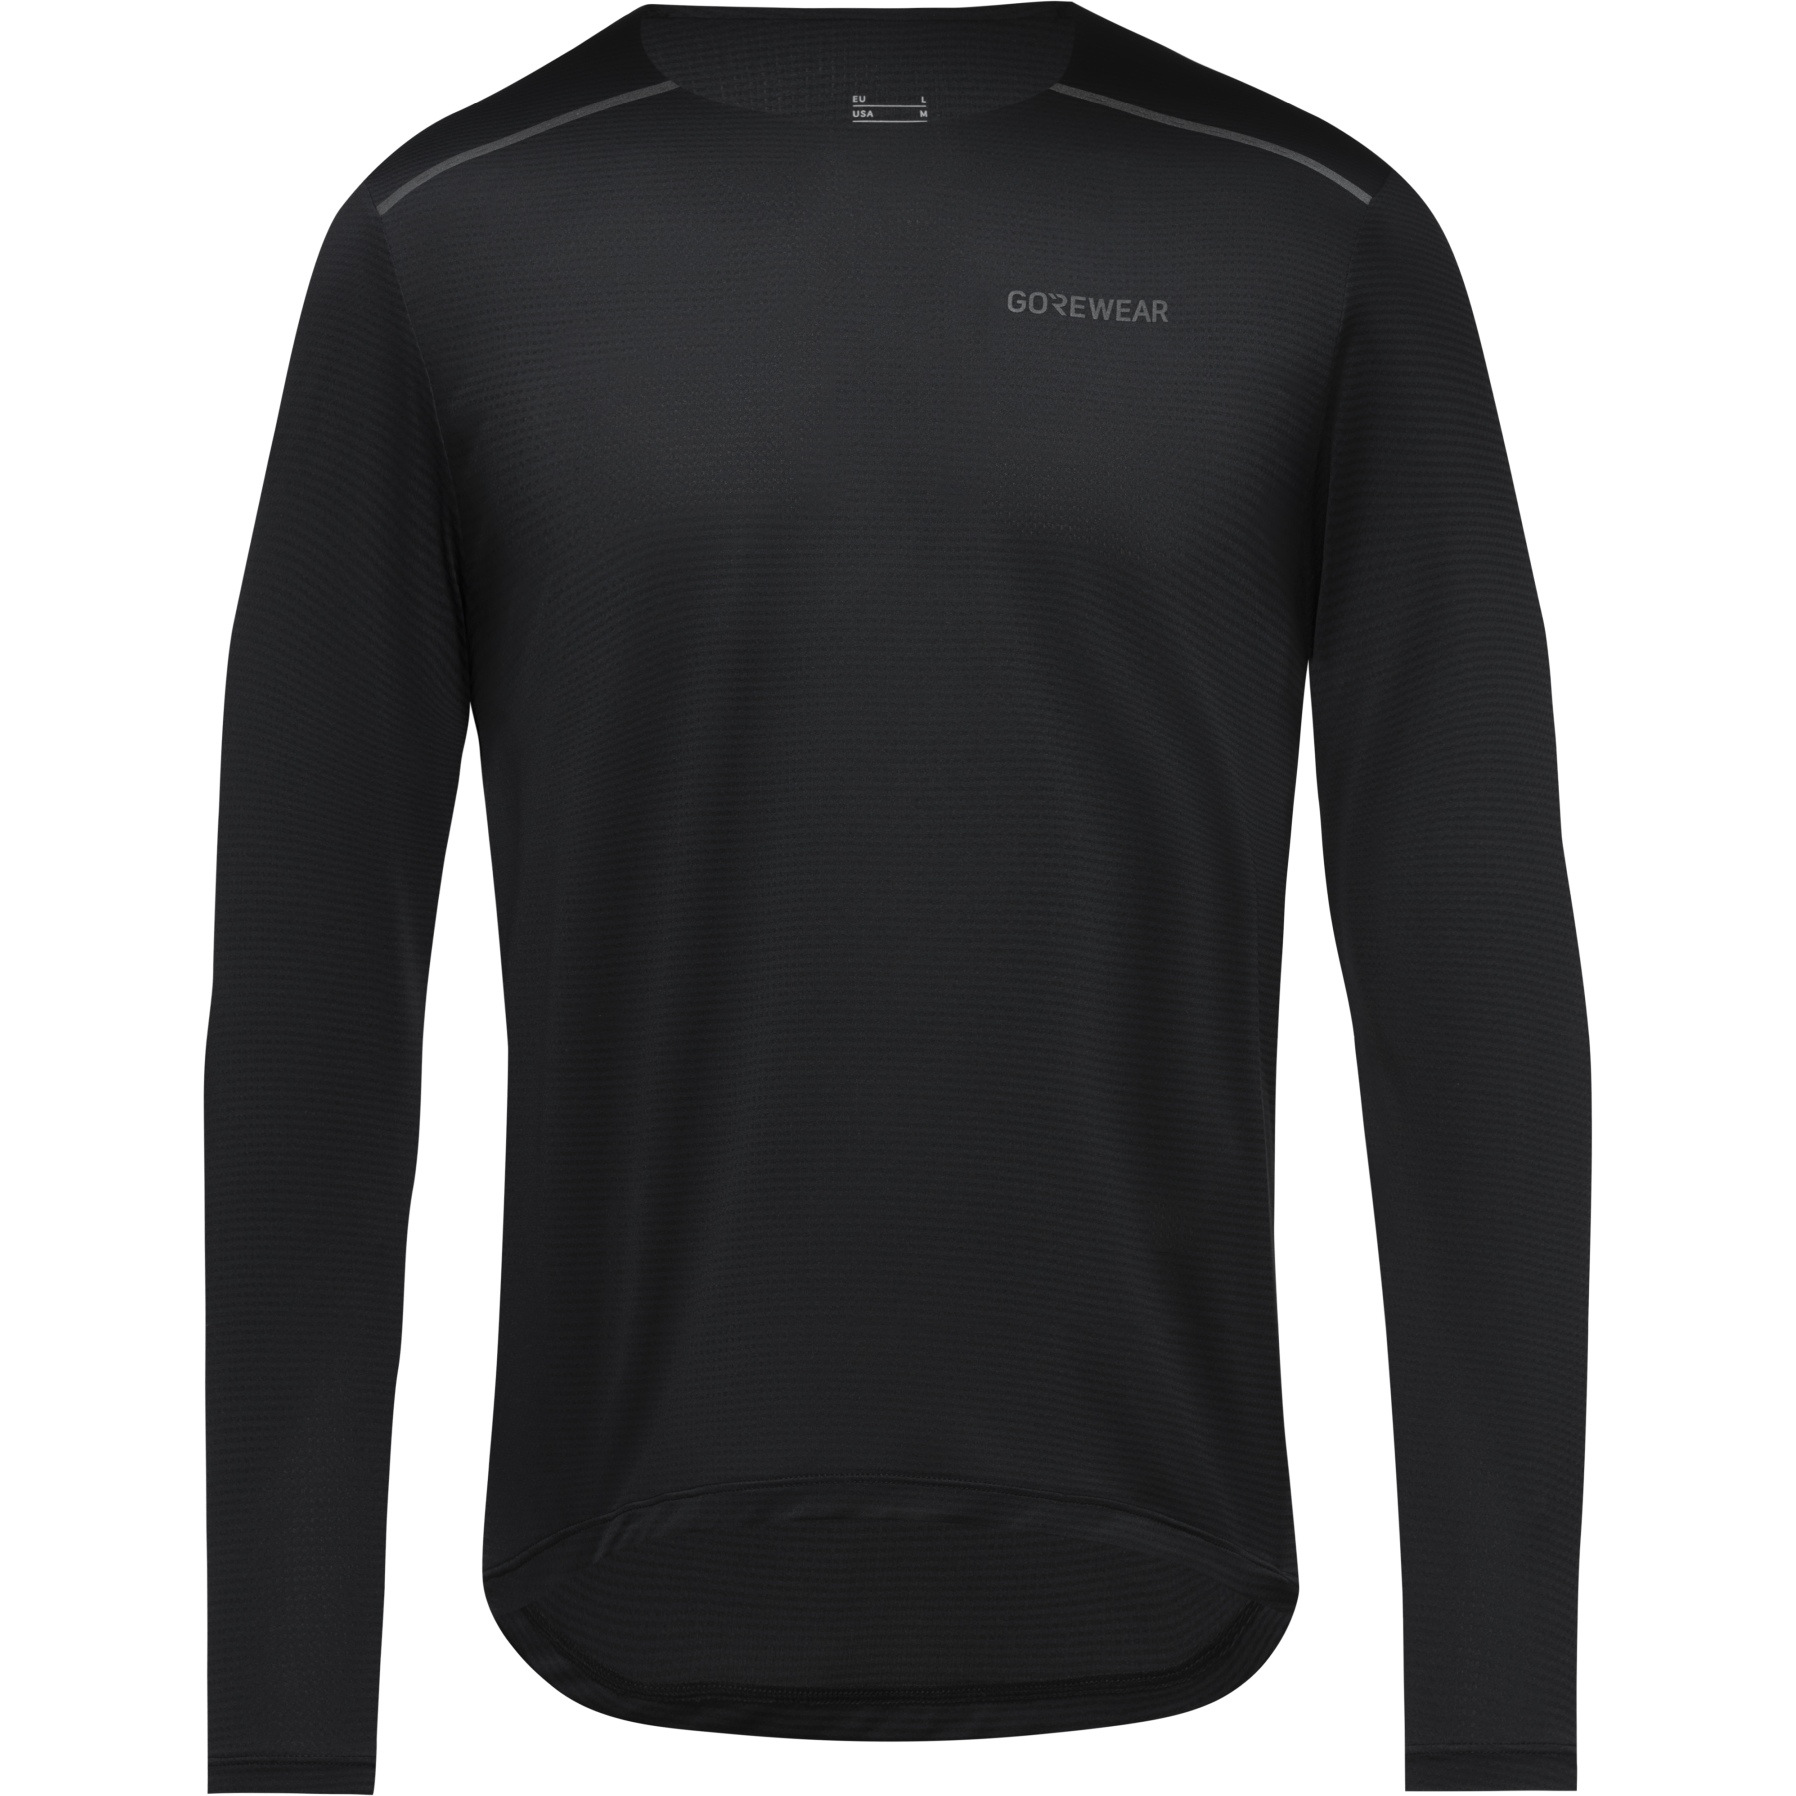 Productfoto van GOREWEAR Contest 2.0 Shirt met Lange Mouwen Heren - zwart 9900